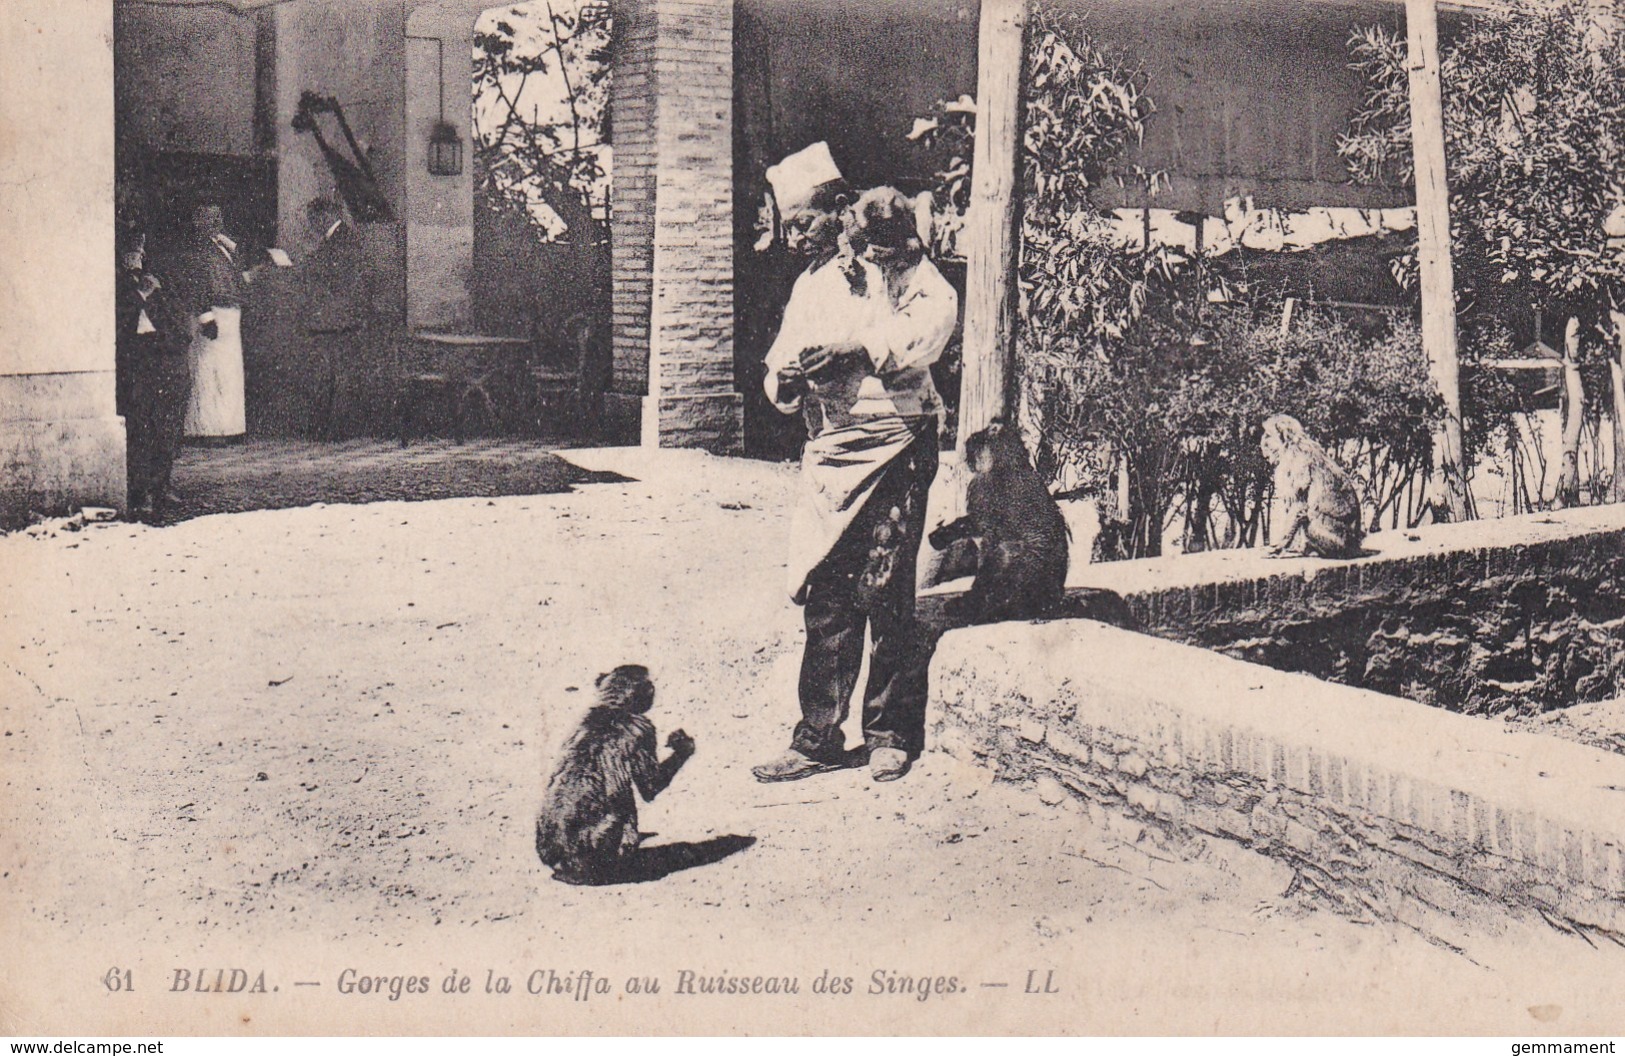 BLADA -GORGES DE LA CHAFFA AU RUISSEAU DES SINGES - Monkeys